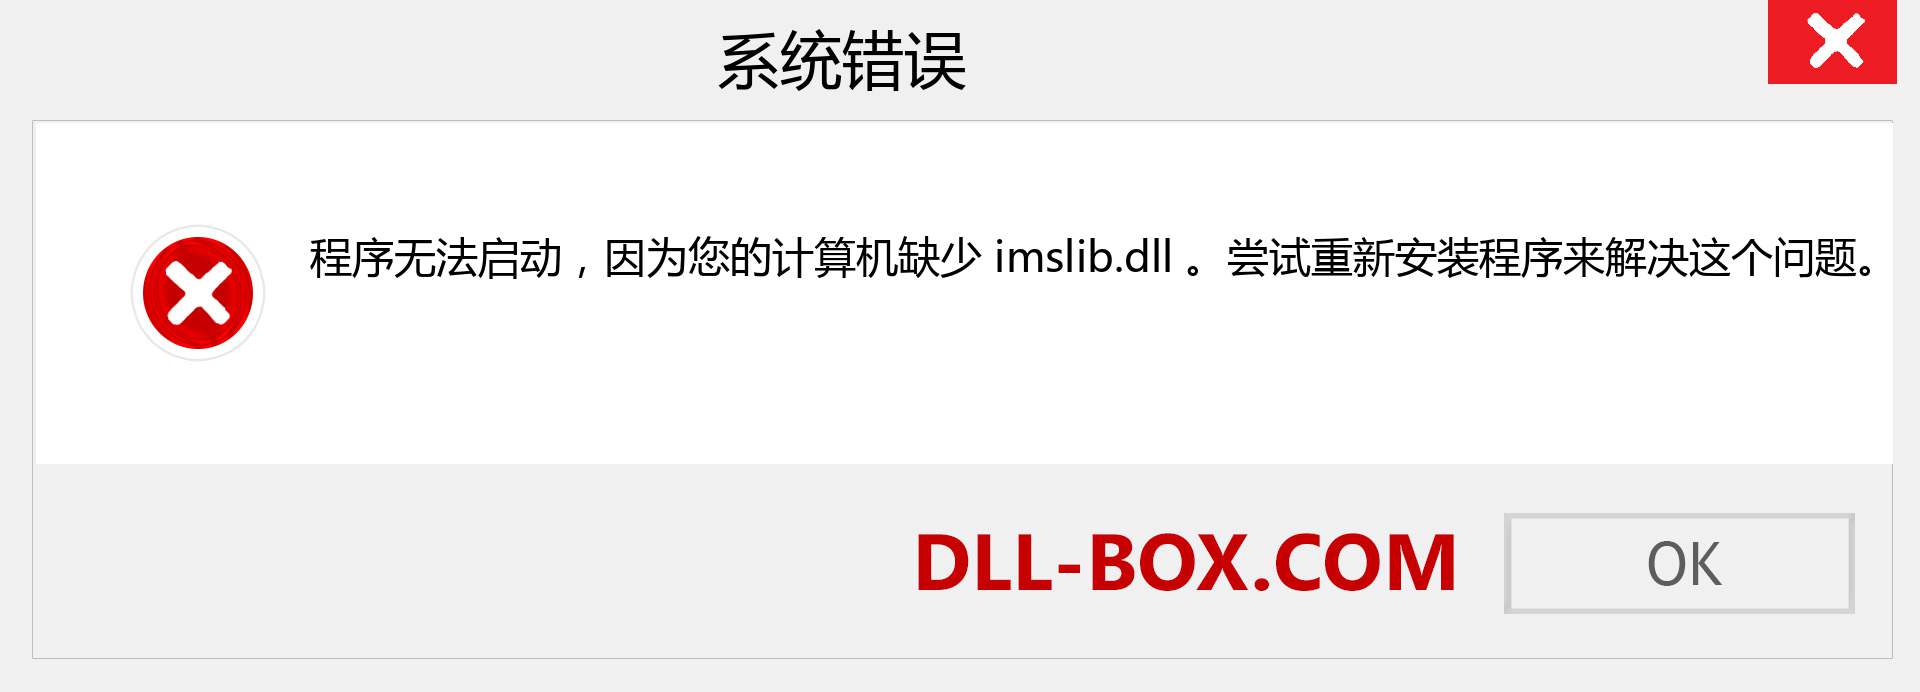 imslib.dll 文件丢失？。 适用于 Windows 7、8、10 的下载 - 修复 Windows、照片、图像上的 imslib dll 丢失错误